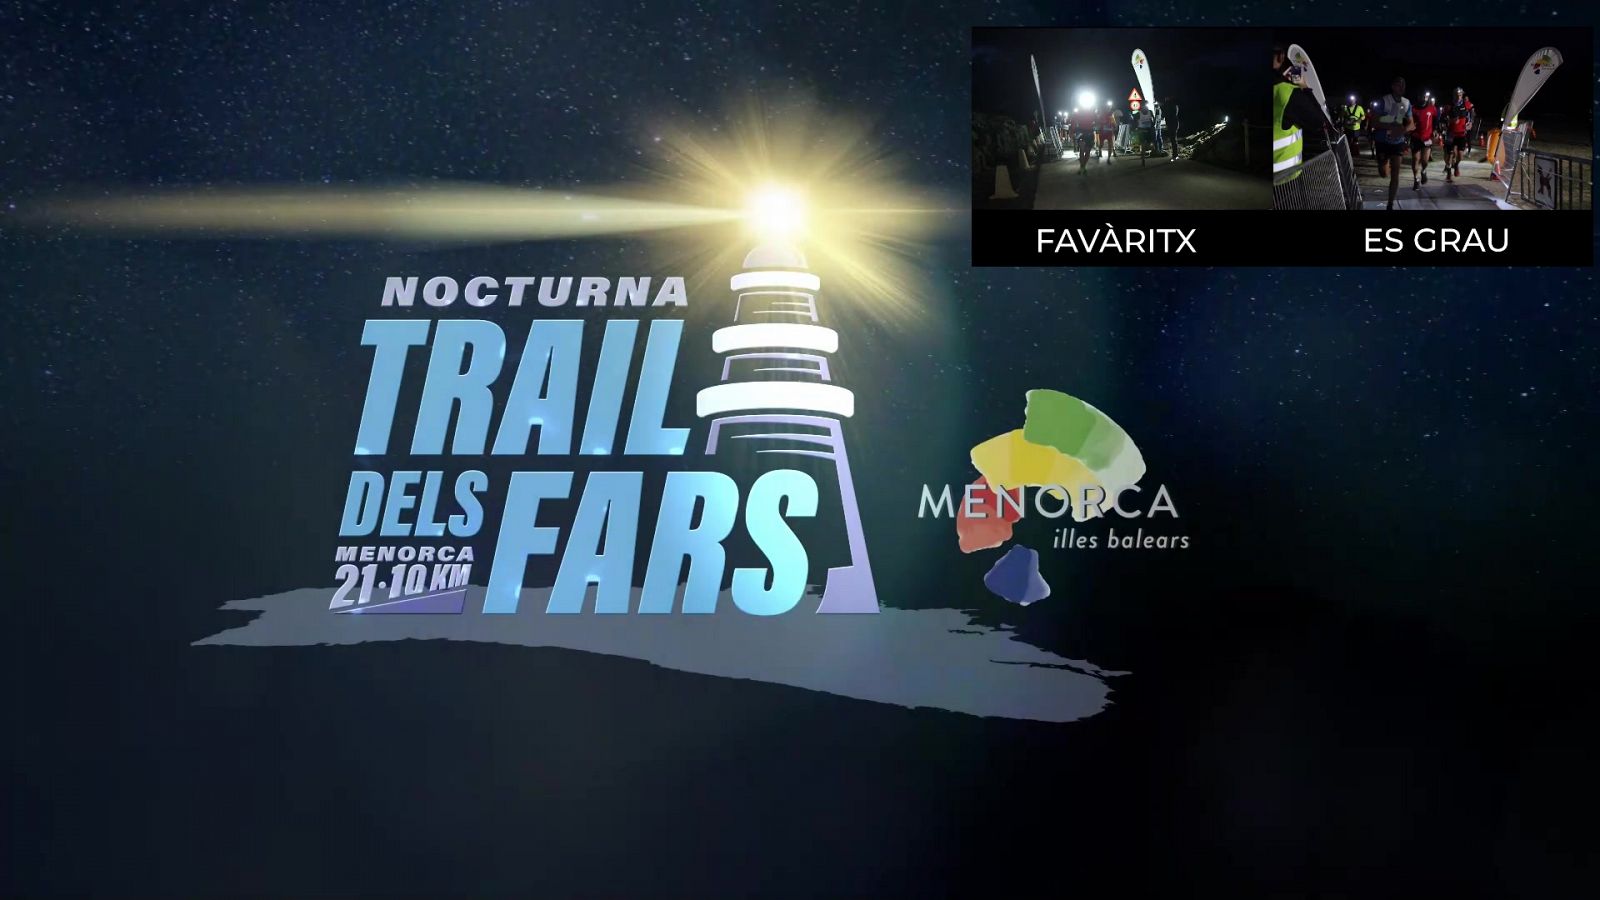 Trail - Trail dels Fars nocturna 2020 - RTVE.es